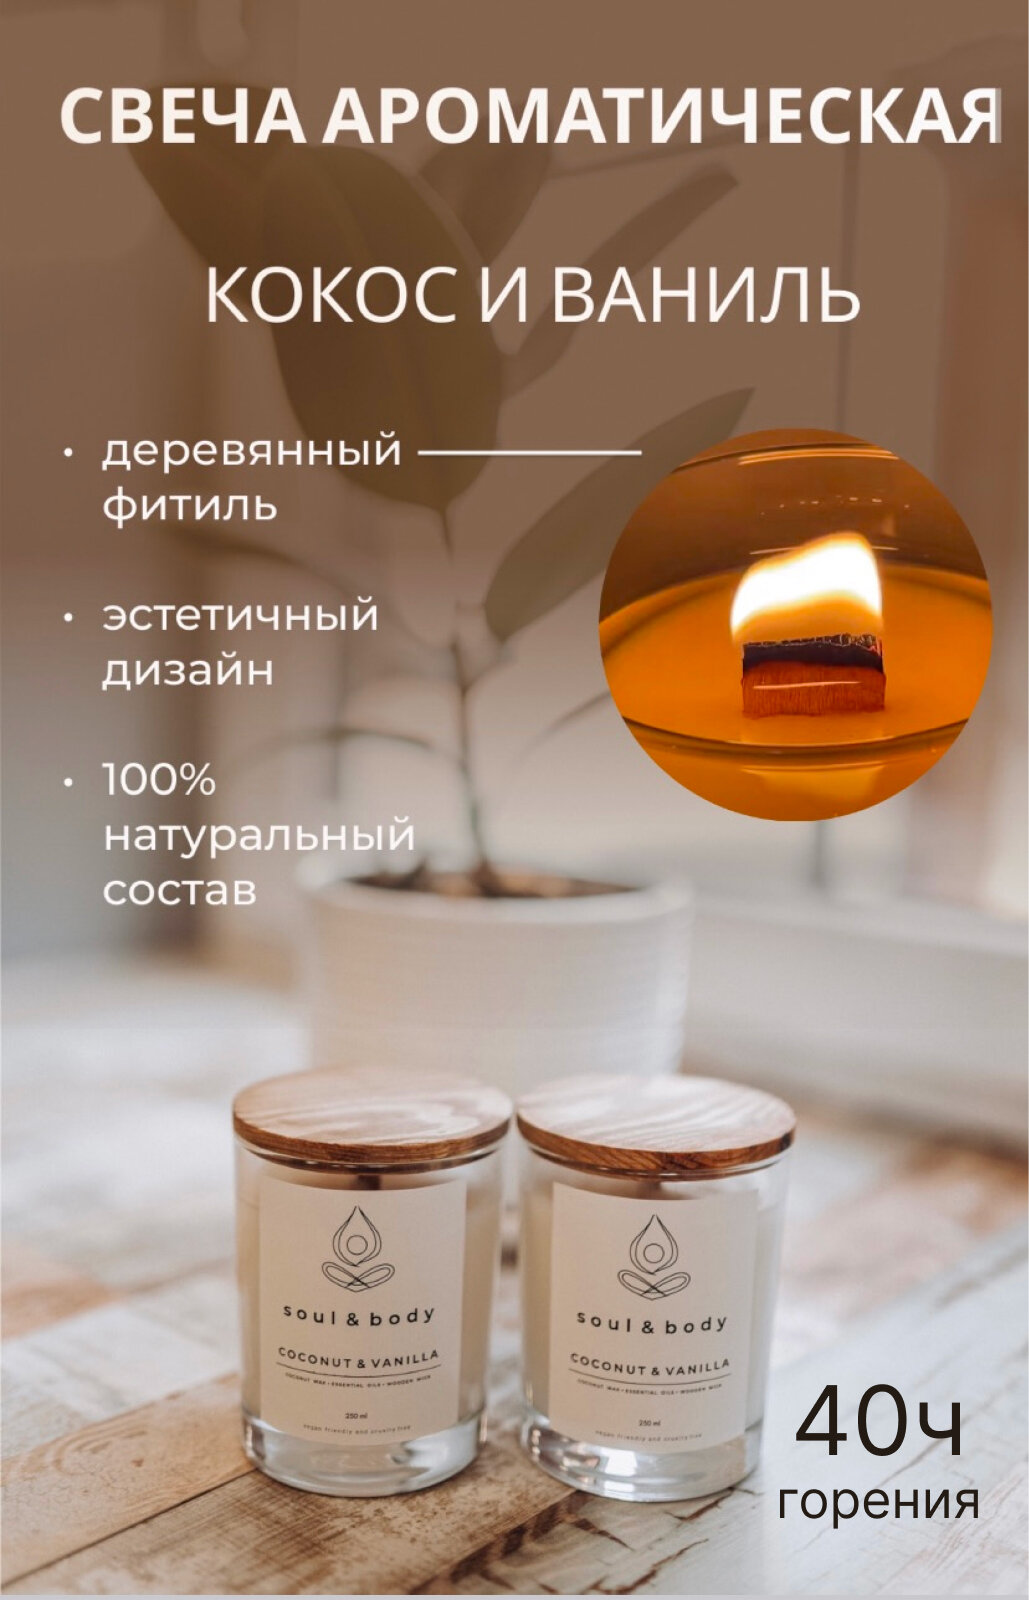 Ароматическая свеча soul&body "Кокос и ваниль", 250 мл /кокосовый воск, в стакане, премиум качество